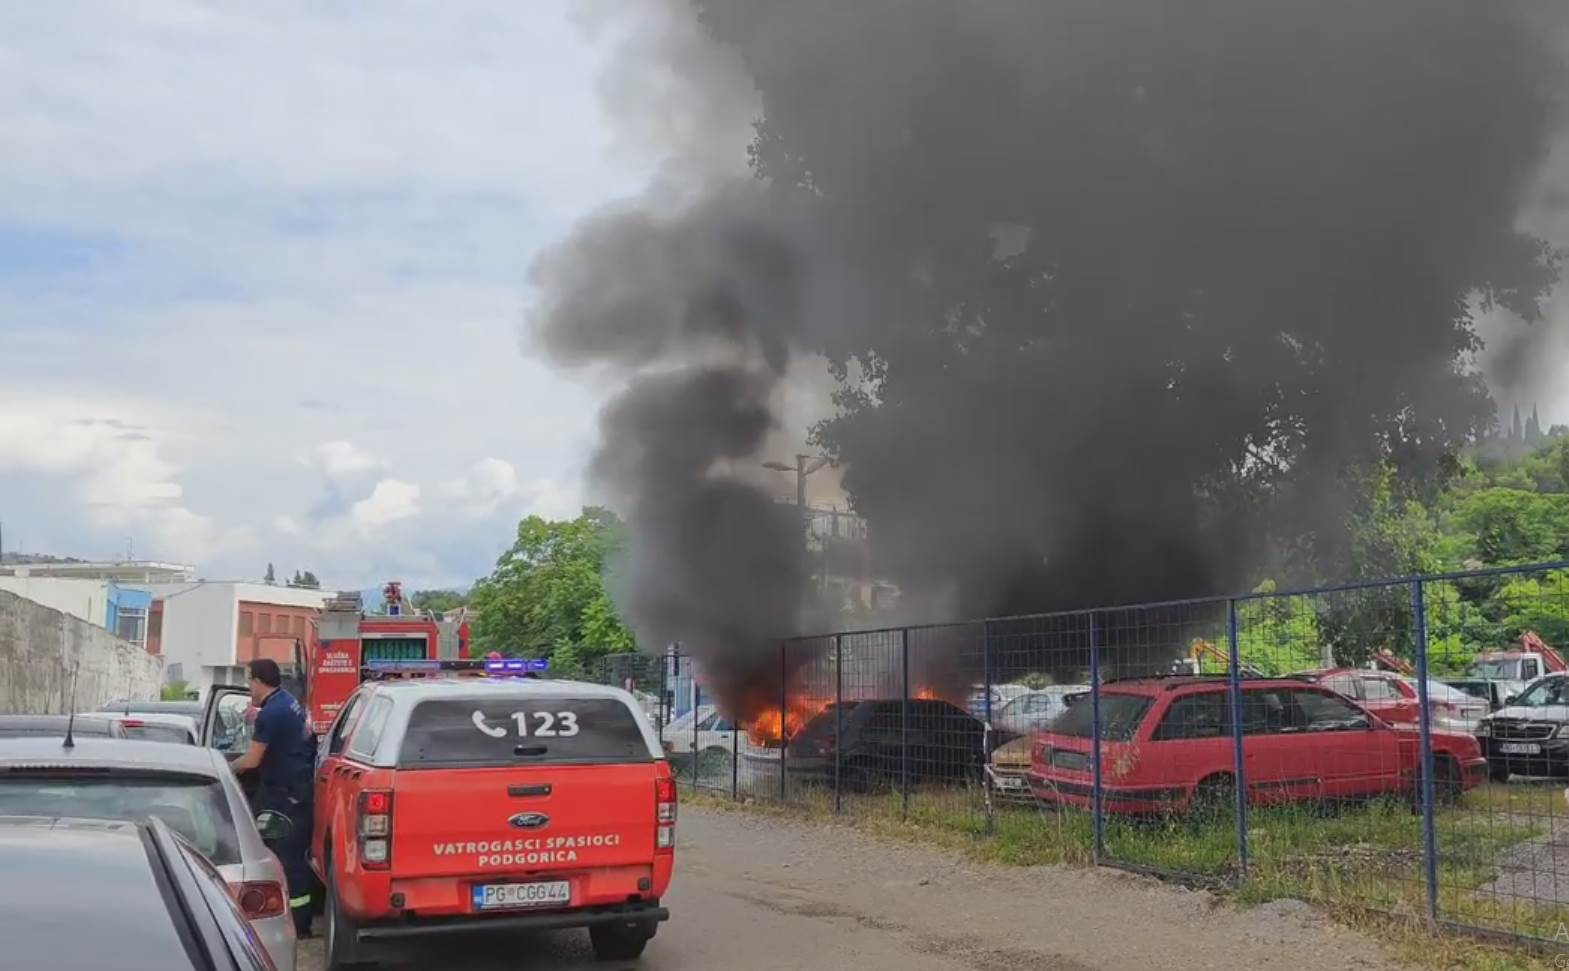  Zapaljeno auto na parkingu ispod Gorice u Podgorici 